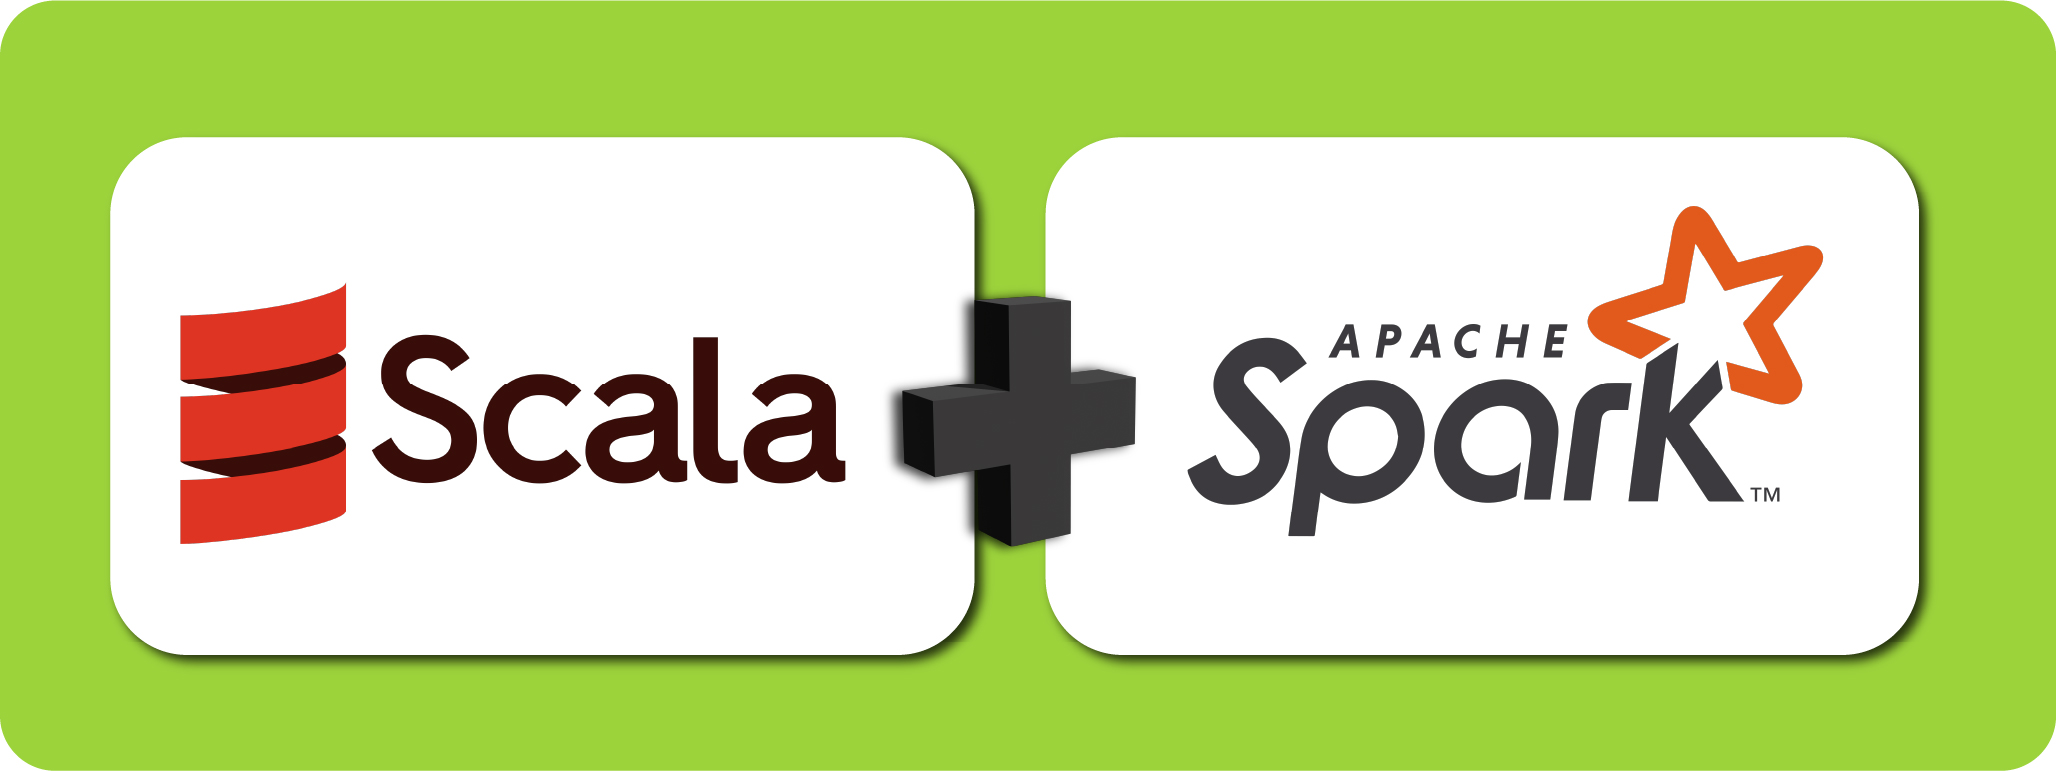 Imagem colorida, representando a união de Scala e Apache Spark, com o logo e nome da esquerda para direita, do Scala e em seguida o Apache Spark. Entre eles existe um sinal de, soma.